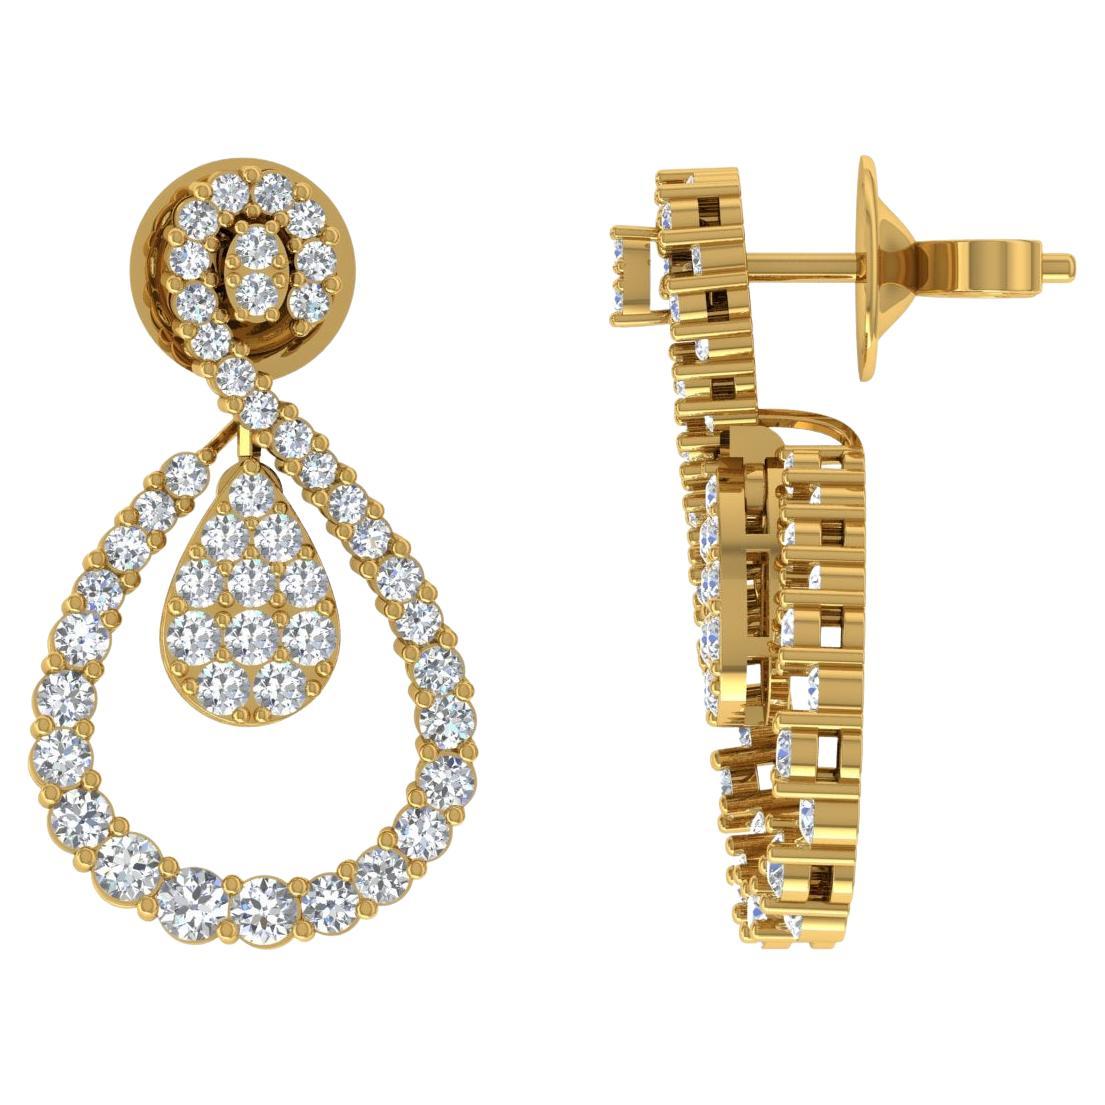 Pendants d'oreilles en or jaune 14 carats avec diamants ronds de 1,75 carat, fabrication artisanale